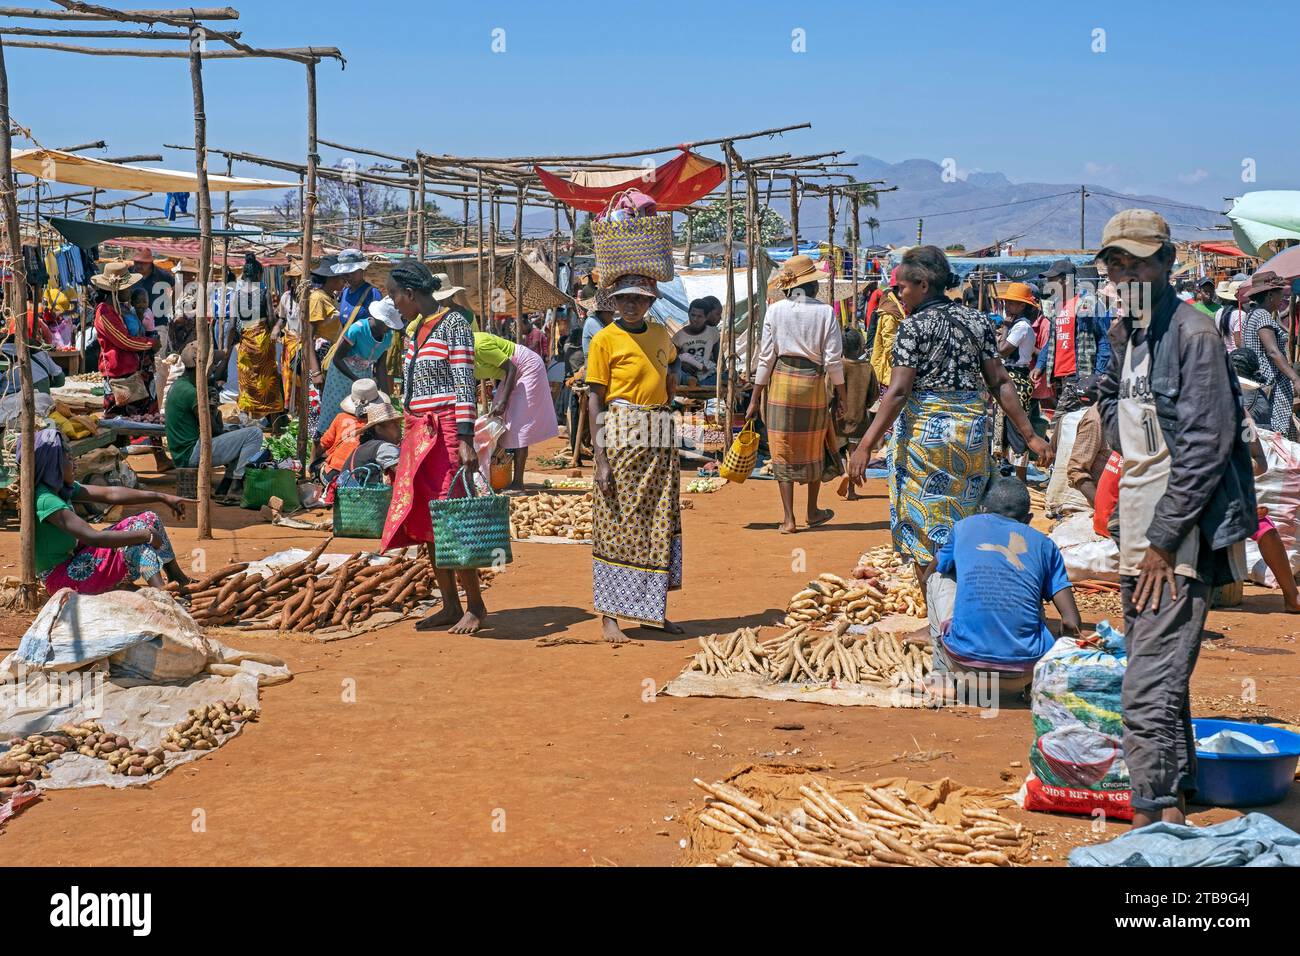 Vendeurs malgaches vendant des fruits et légumes au marché alimentaire dans la ville Ambalavao, haute Matsiatra, Hautes terres centrales, Madagascar, Afrique Banque D'Images